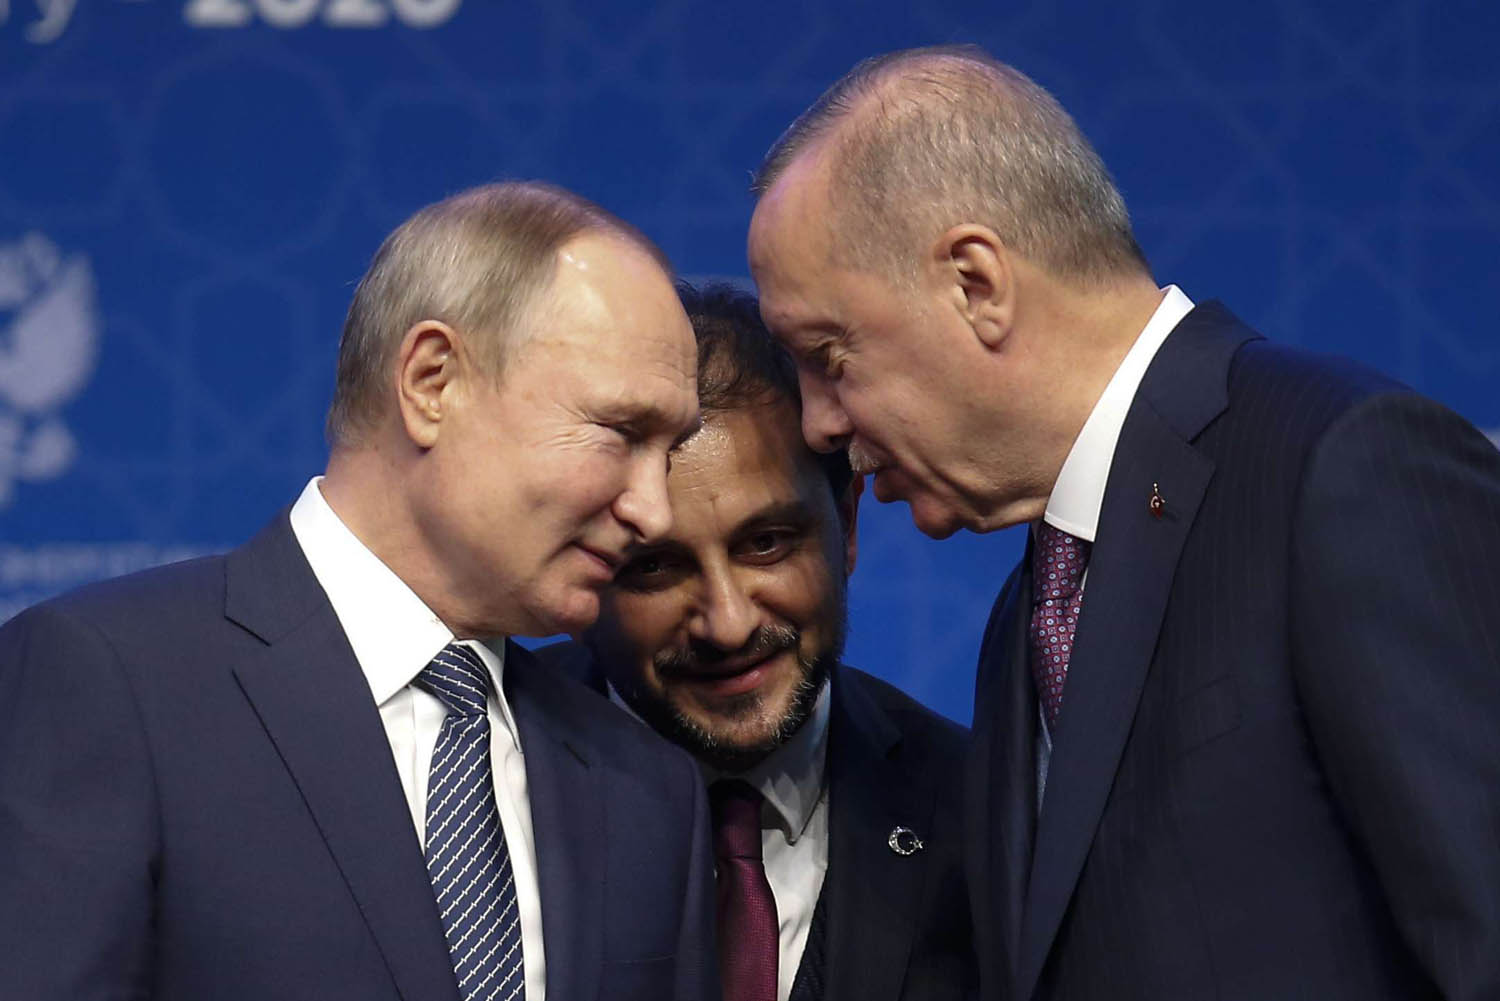 الرئيس الروسي فلاديمير بوتين والرئيس التركي رجب طيب أردوغان في مؤتمر برلين عن ليبيا